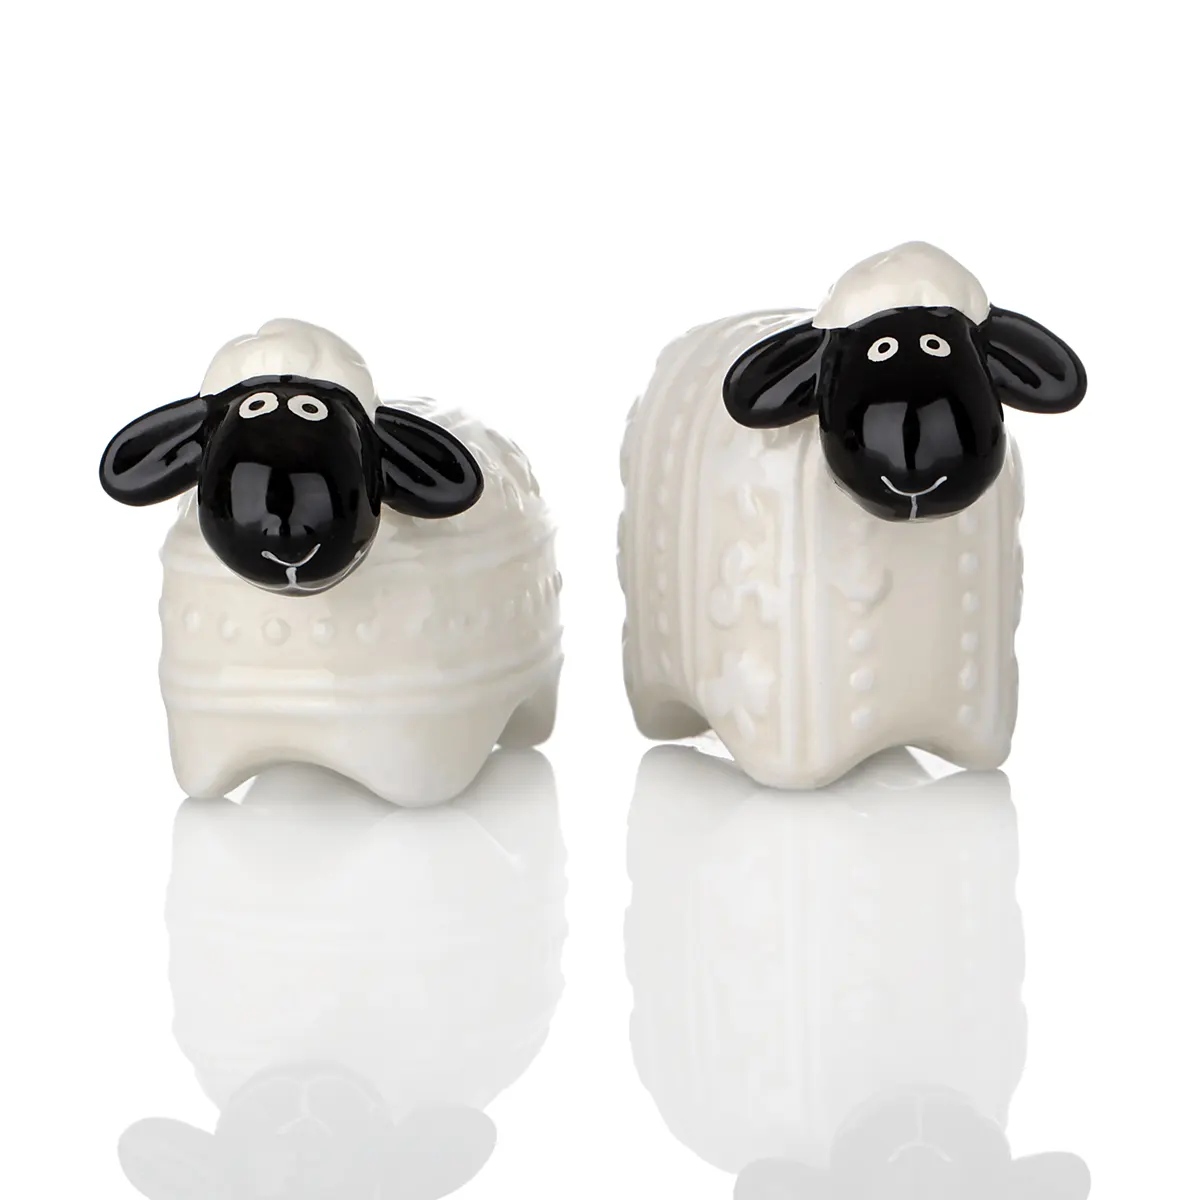 Woolly Ware - Handbemalte Irische Schafe als Keramik Salz- und Pfefferstreuer Set